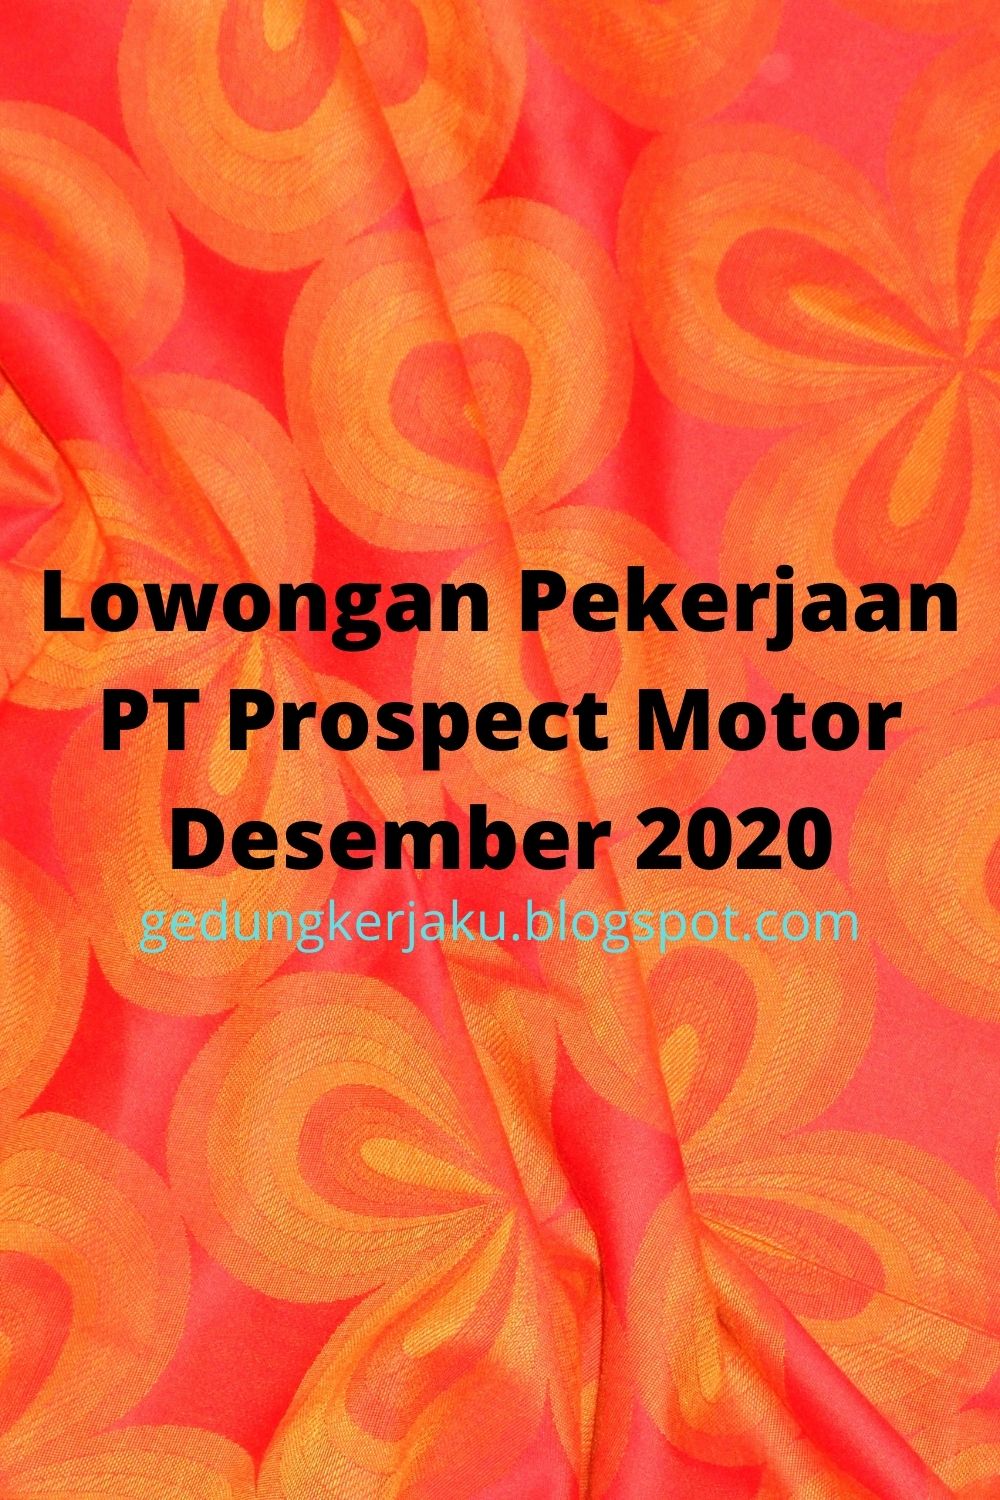 Lowongan Pekerjaan PT Prospect Motor Desember 2020